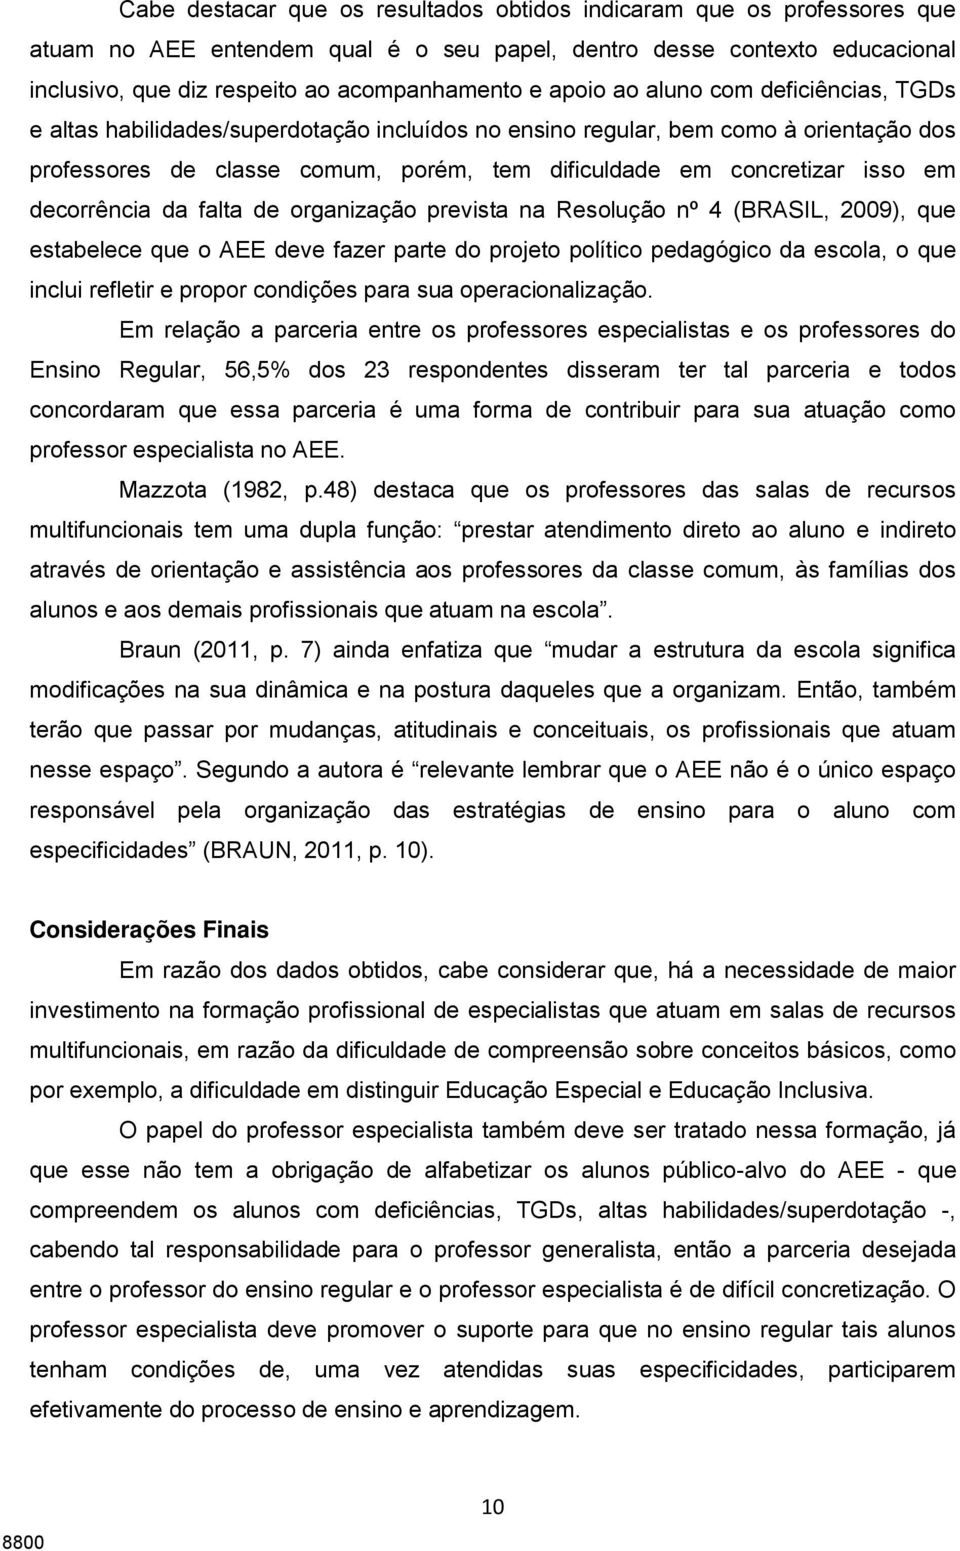 em decorrência da falta de organização prevista na Resolução nº 4 (BRASIL, 2009), que estabelece que o AEE deve fazer parte do projeto político pedagógico da escola, o que inclui refletir e propor